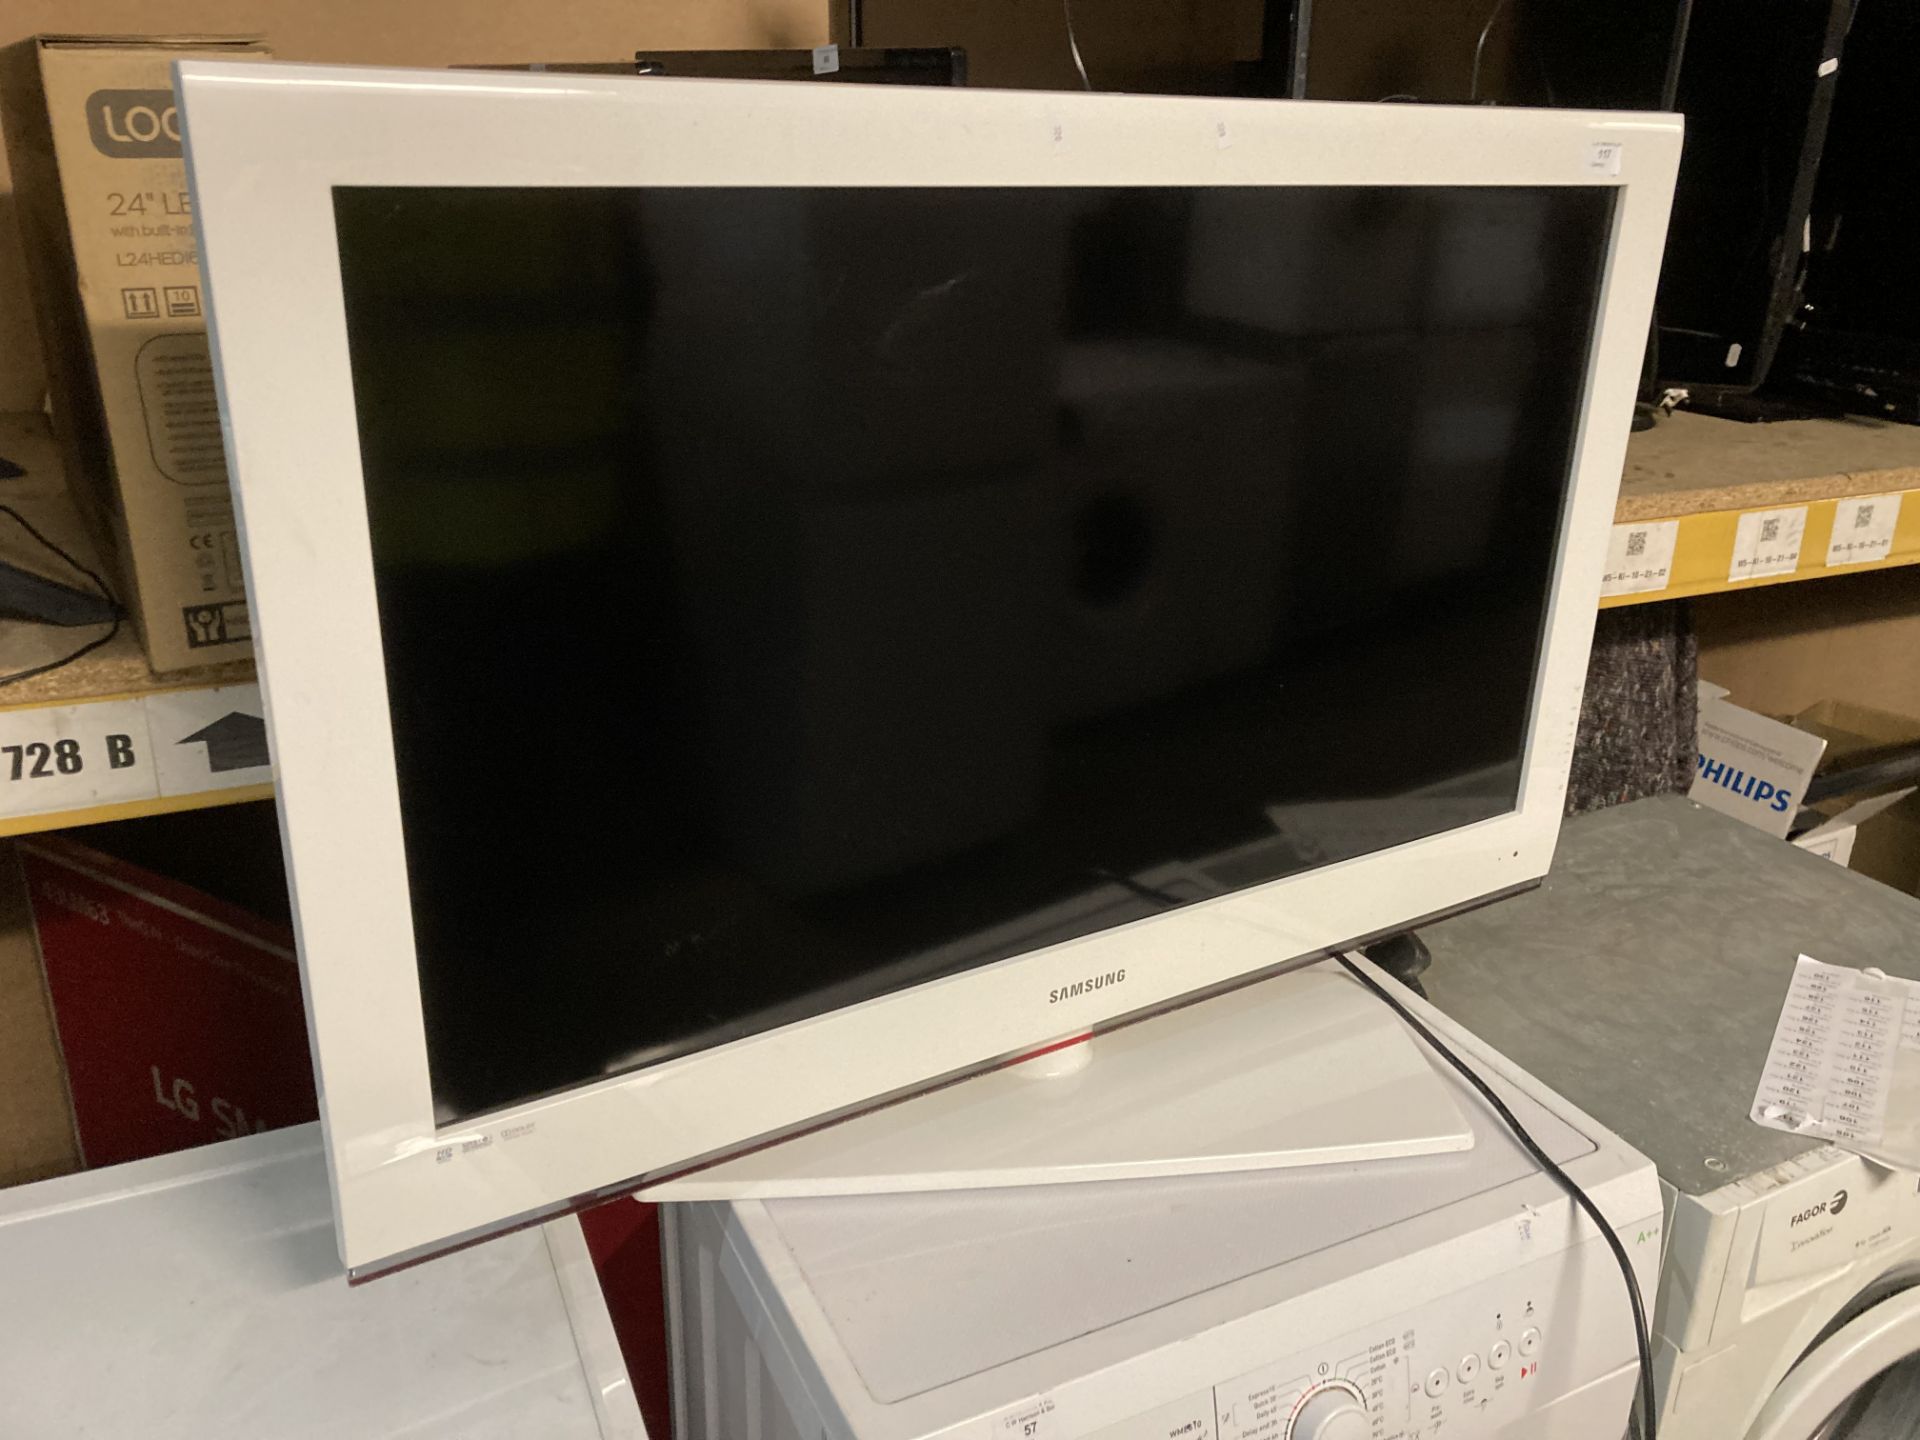 Samsung LE40B541P7W 40" hd tv in white (no remote) (Saleroom location: PO) - Image 2 of 2